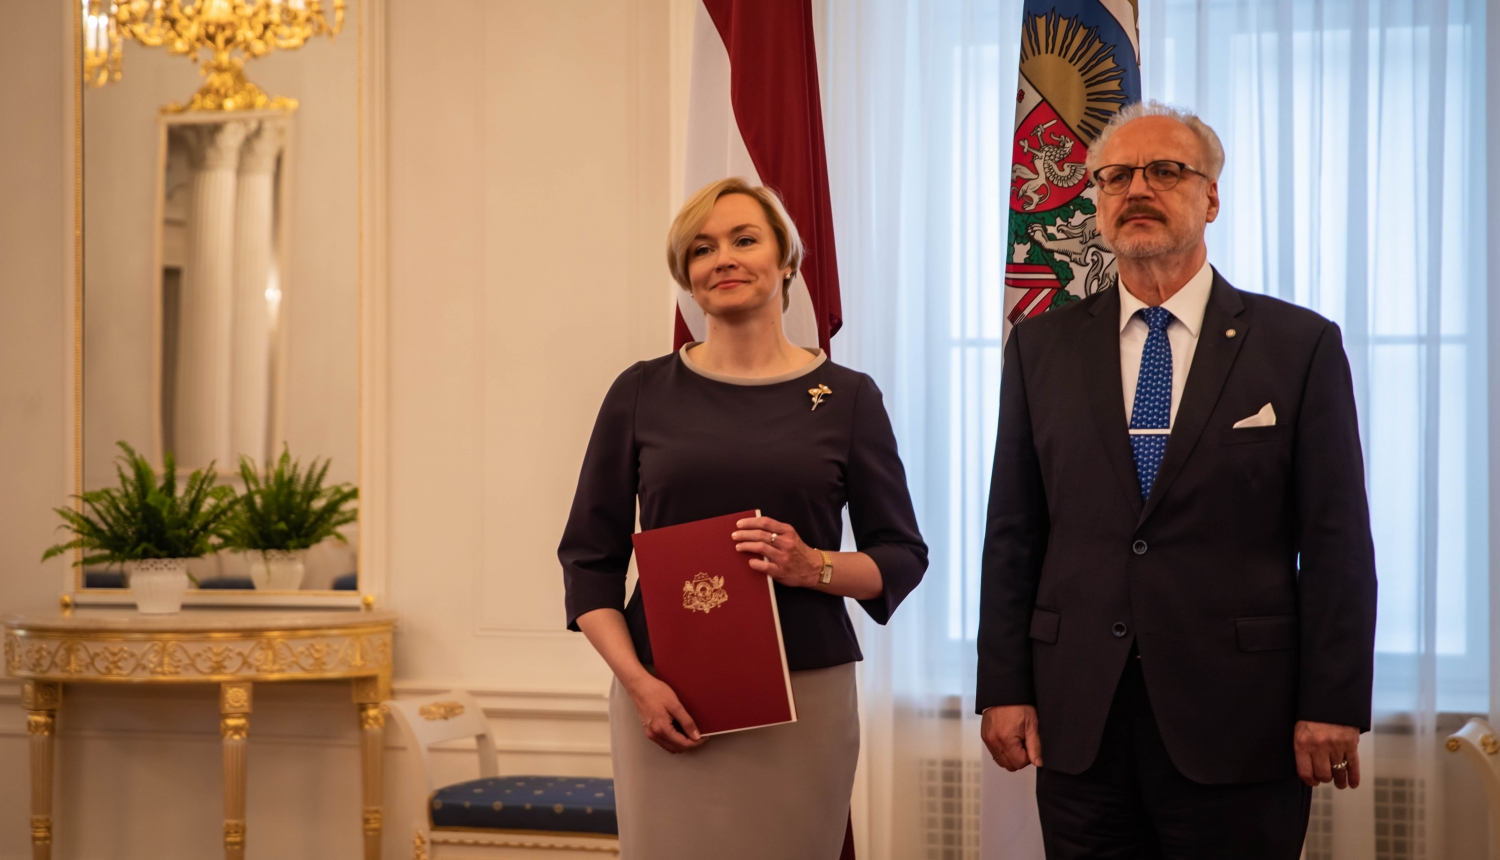 Valsts prezidents pasniedz akreditācijas vēstuli Latvijas vēstniecei Austrijā Gunai Japiņai